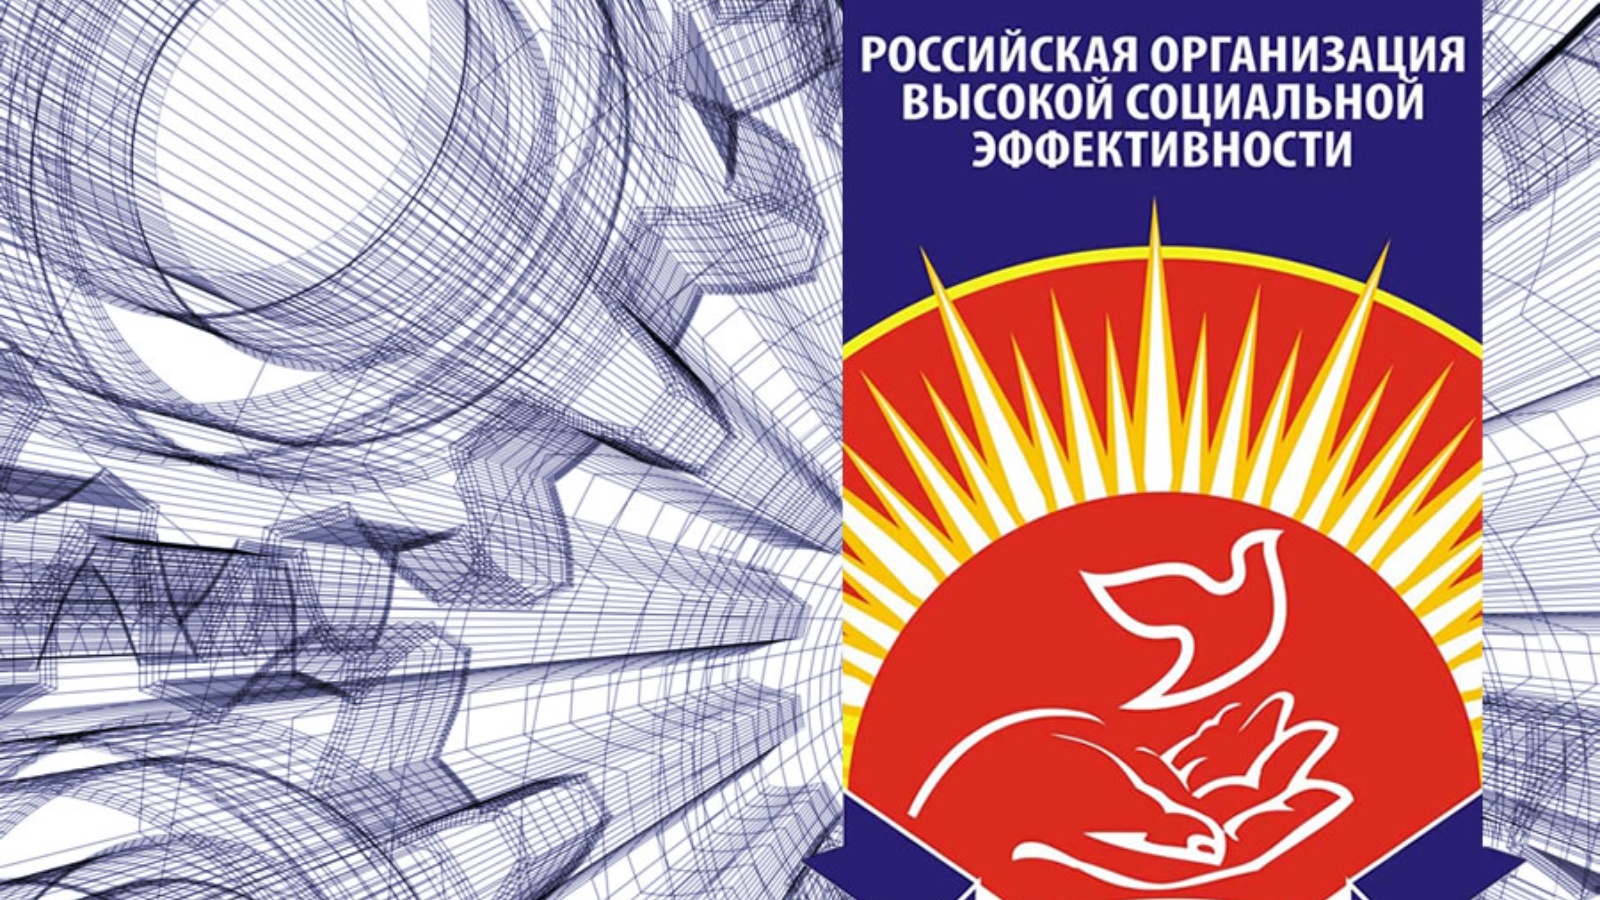 Всероссийский конкурс  «Российская организация высокой социальной эффективности».